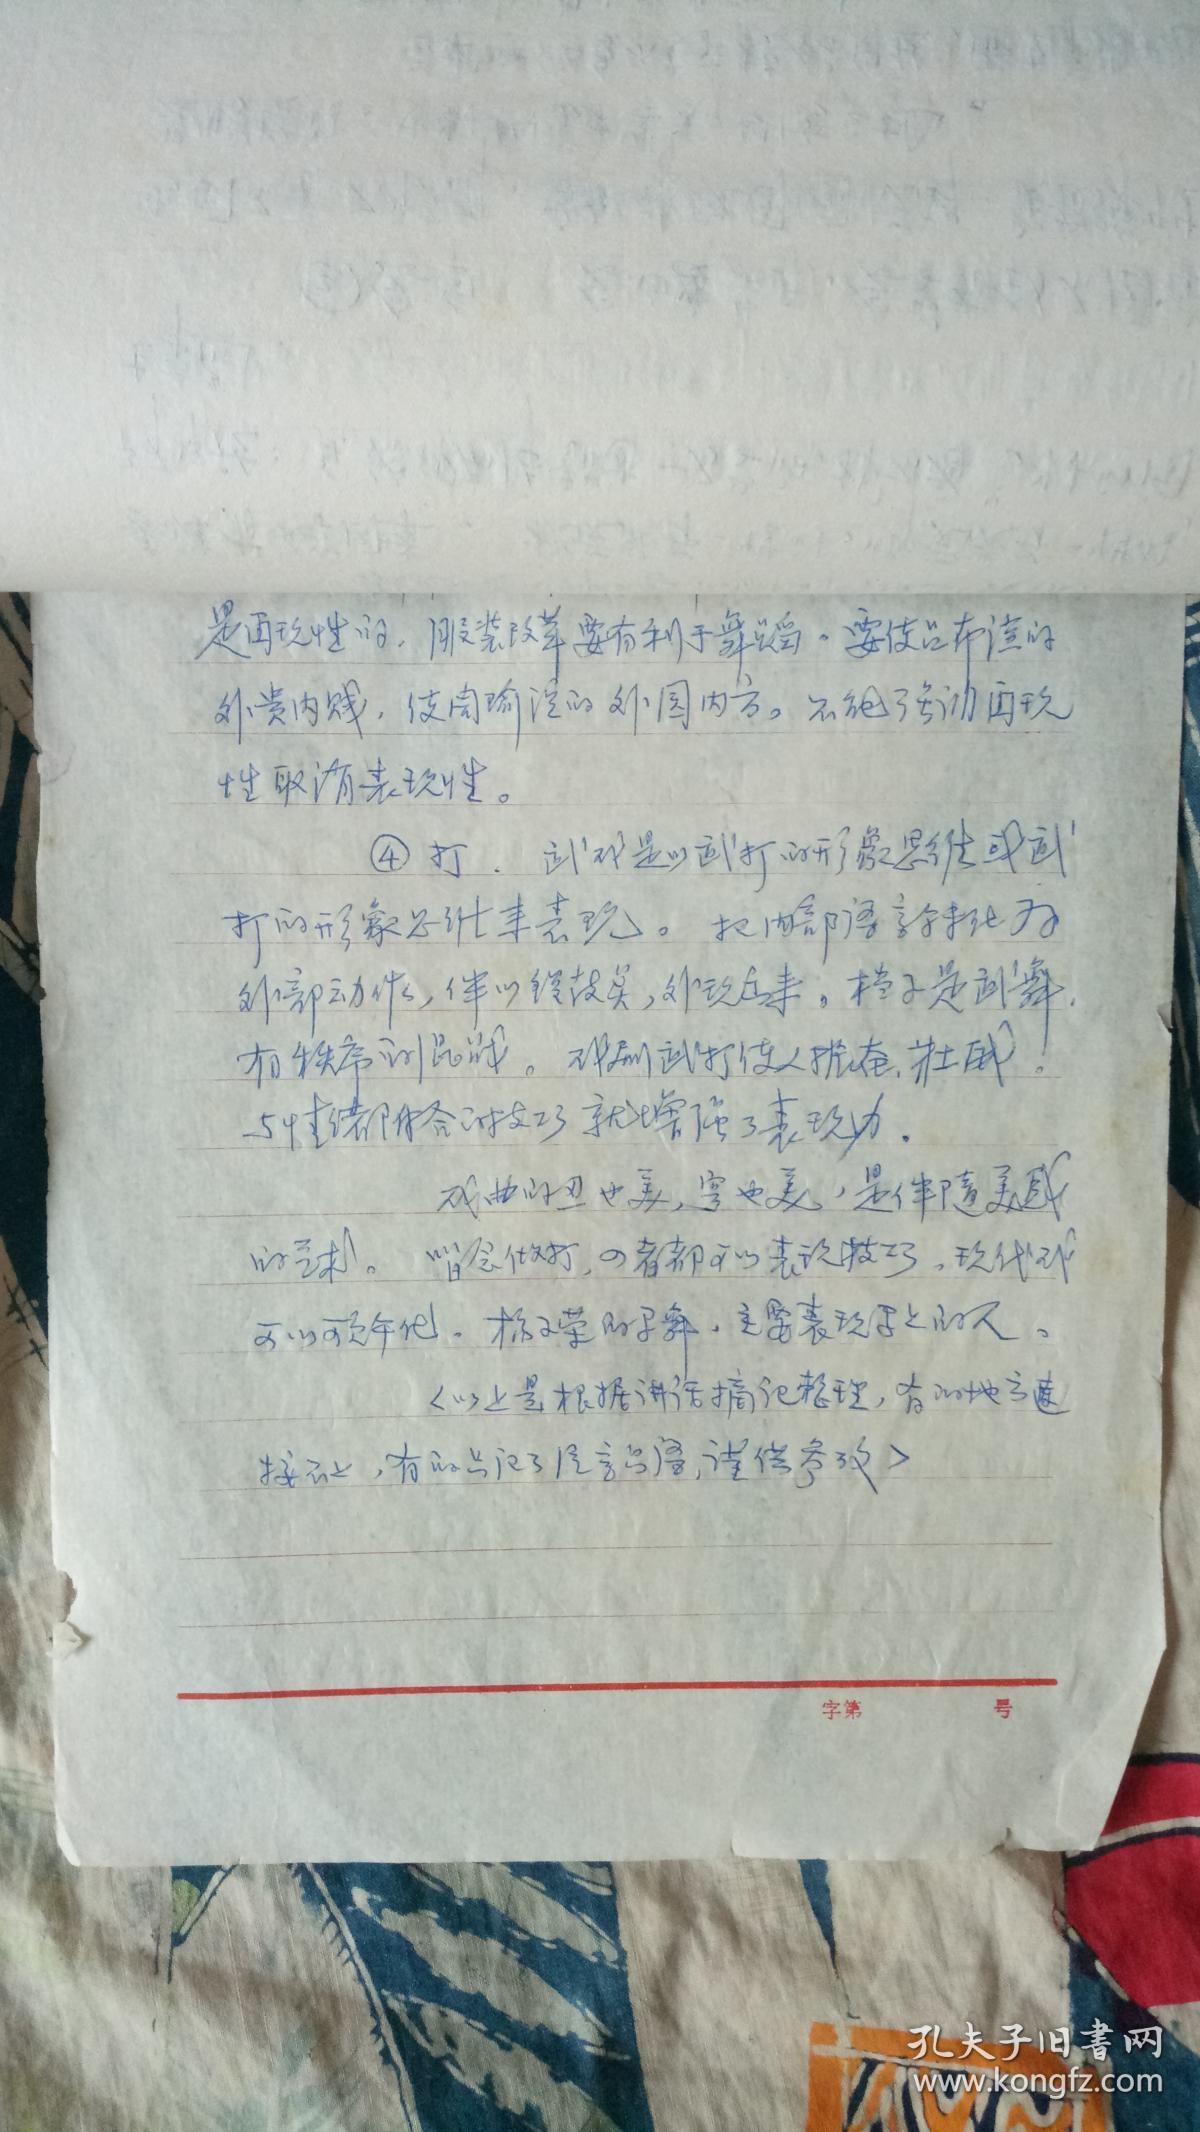 1985年11月中国艺术研究院朱文祥关于当前戏剧形势的报告。